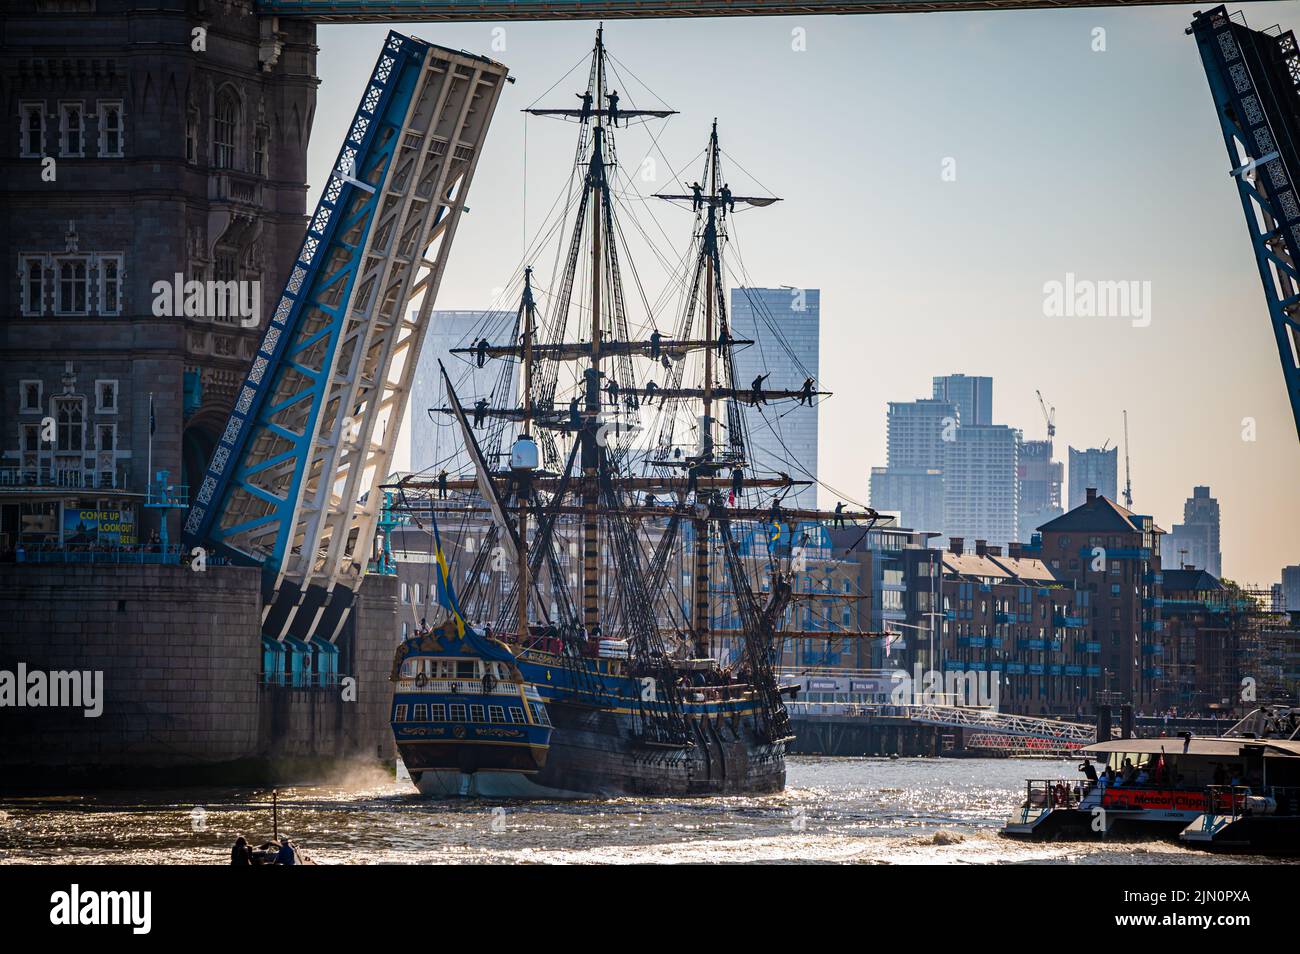 Réplica del buque sueco del siglo 18th Götheborg visitando Londres, Reino Unido Foto de stock